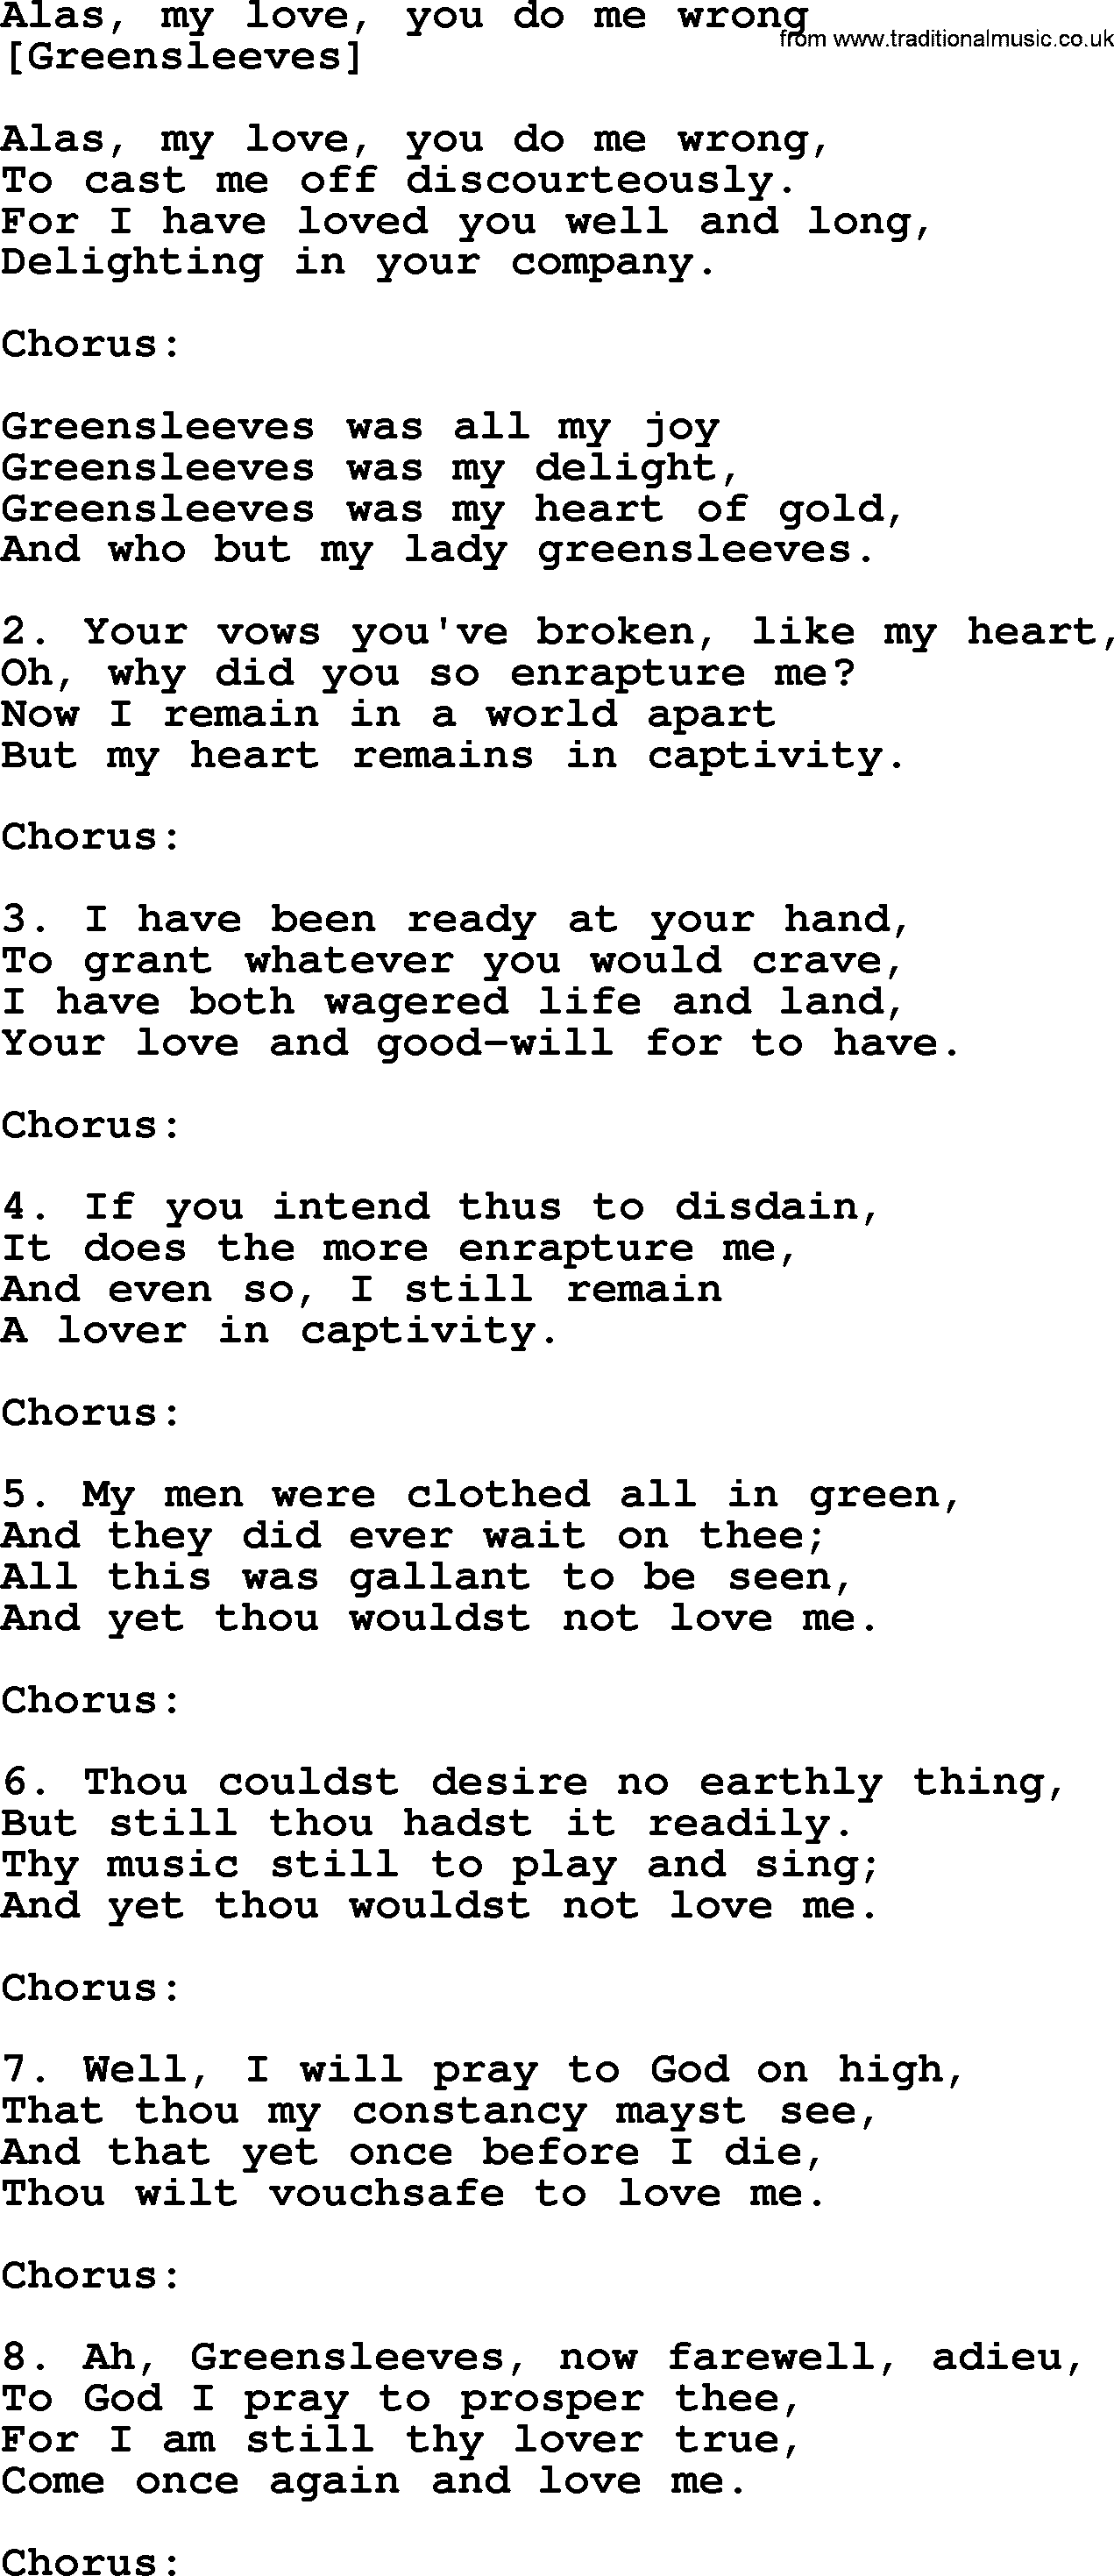 Old English Song: Alas, My Love, You Do Me Wrong lyrics